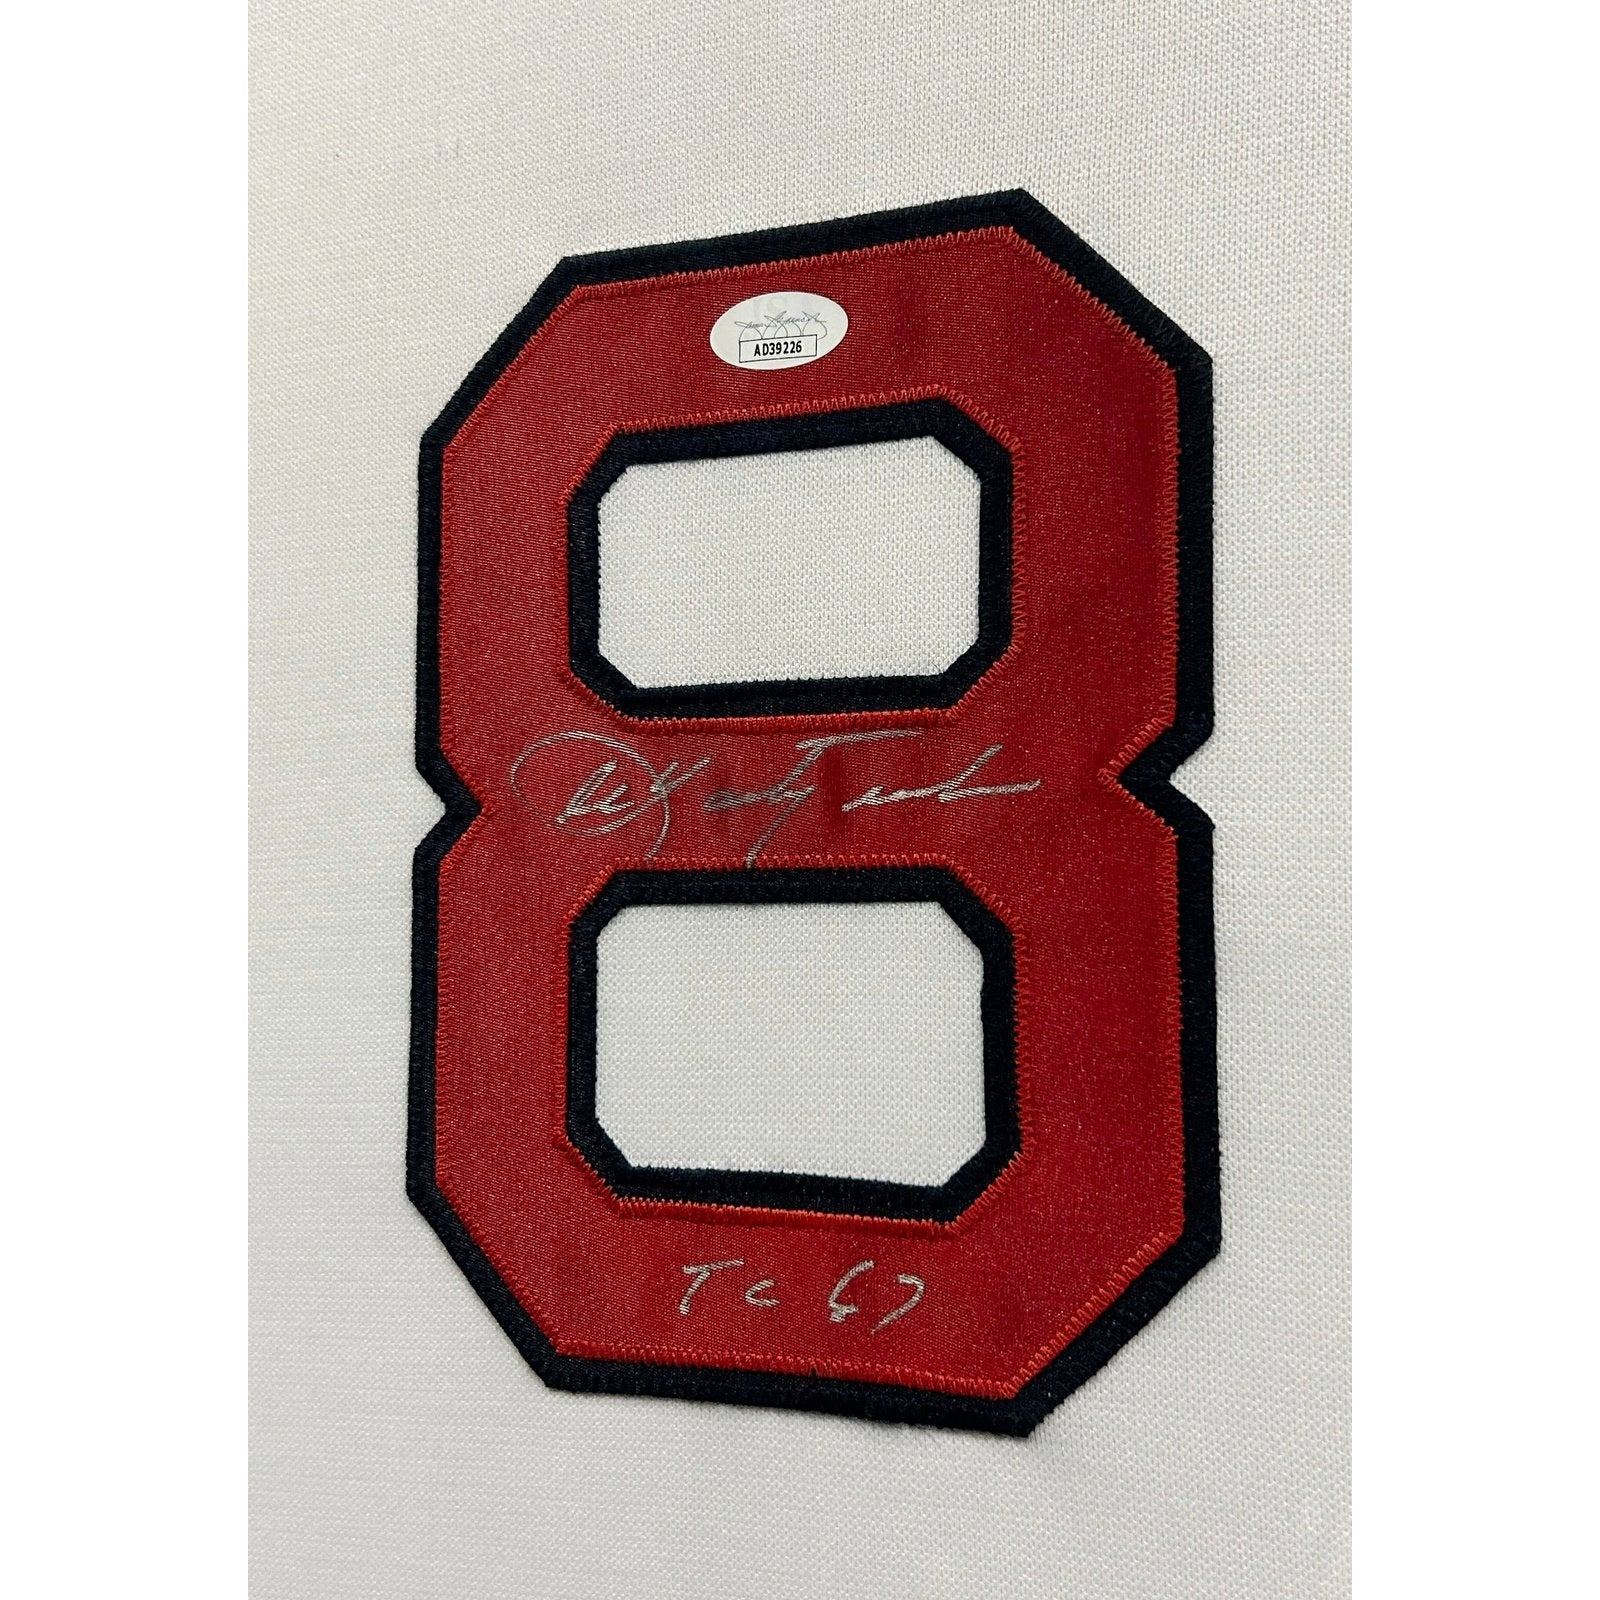 Carl Yastrzemski Signed Framed Jersey JSA Autographed Boston Red Sox